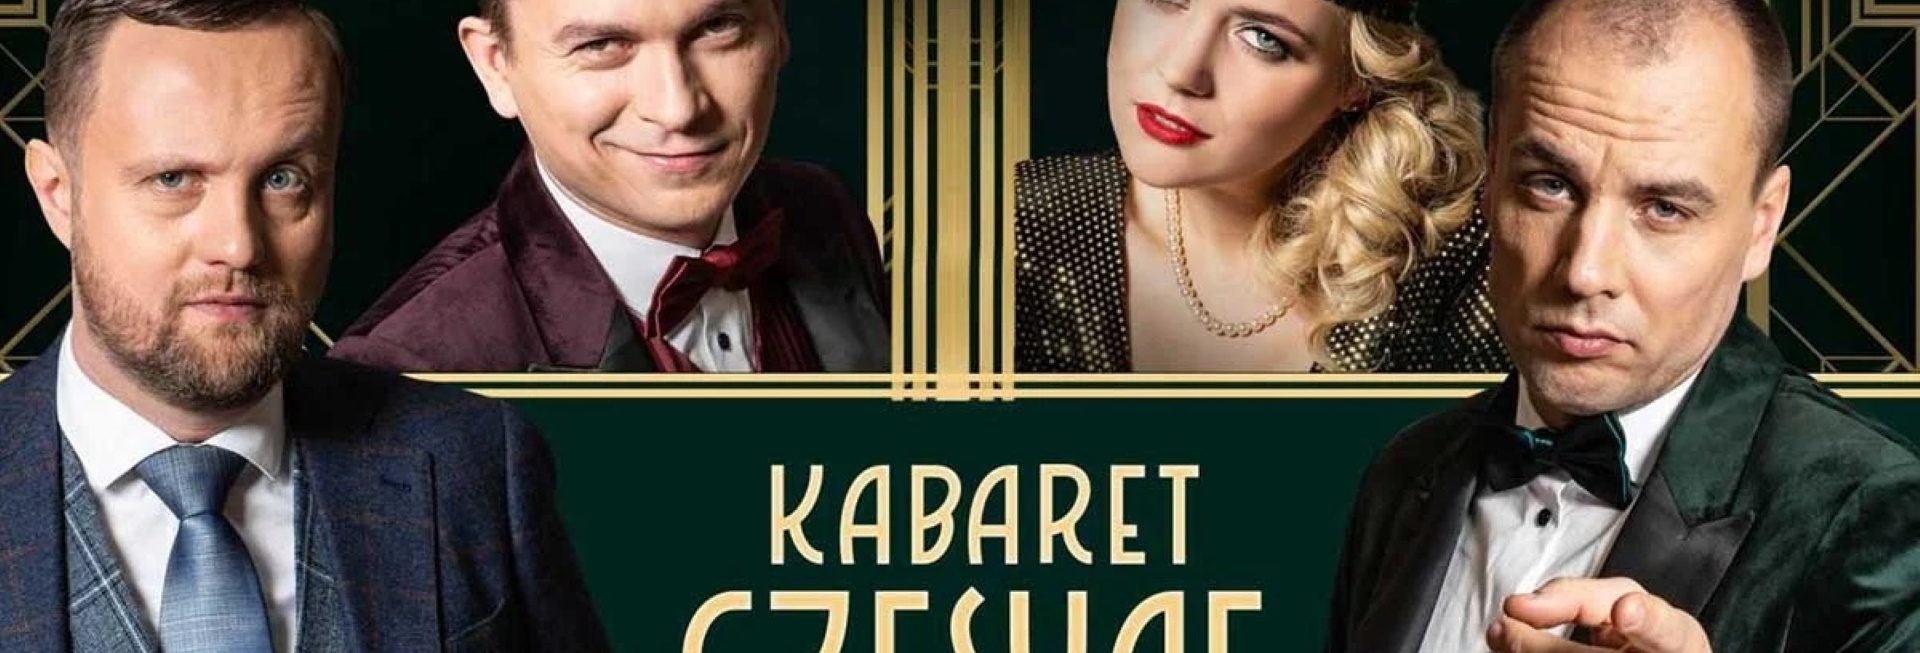 Plakat graficzny zapraszający do Nowego Miasta Lubawskiego na występ Kabaretu Czesuaf "Przyjęcie" - Nowe Miasto Lubawskie 2022.